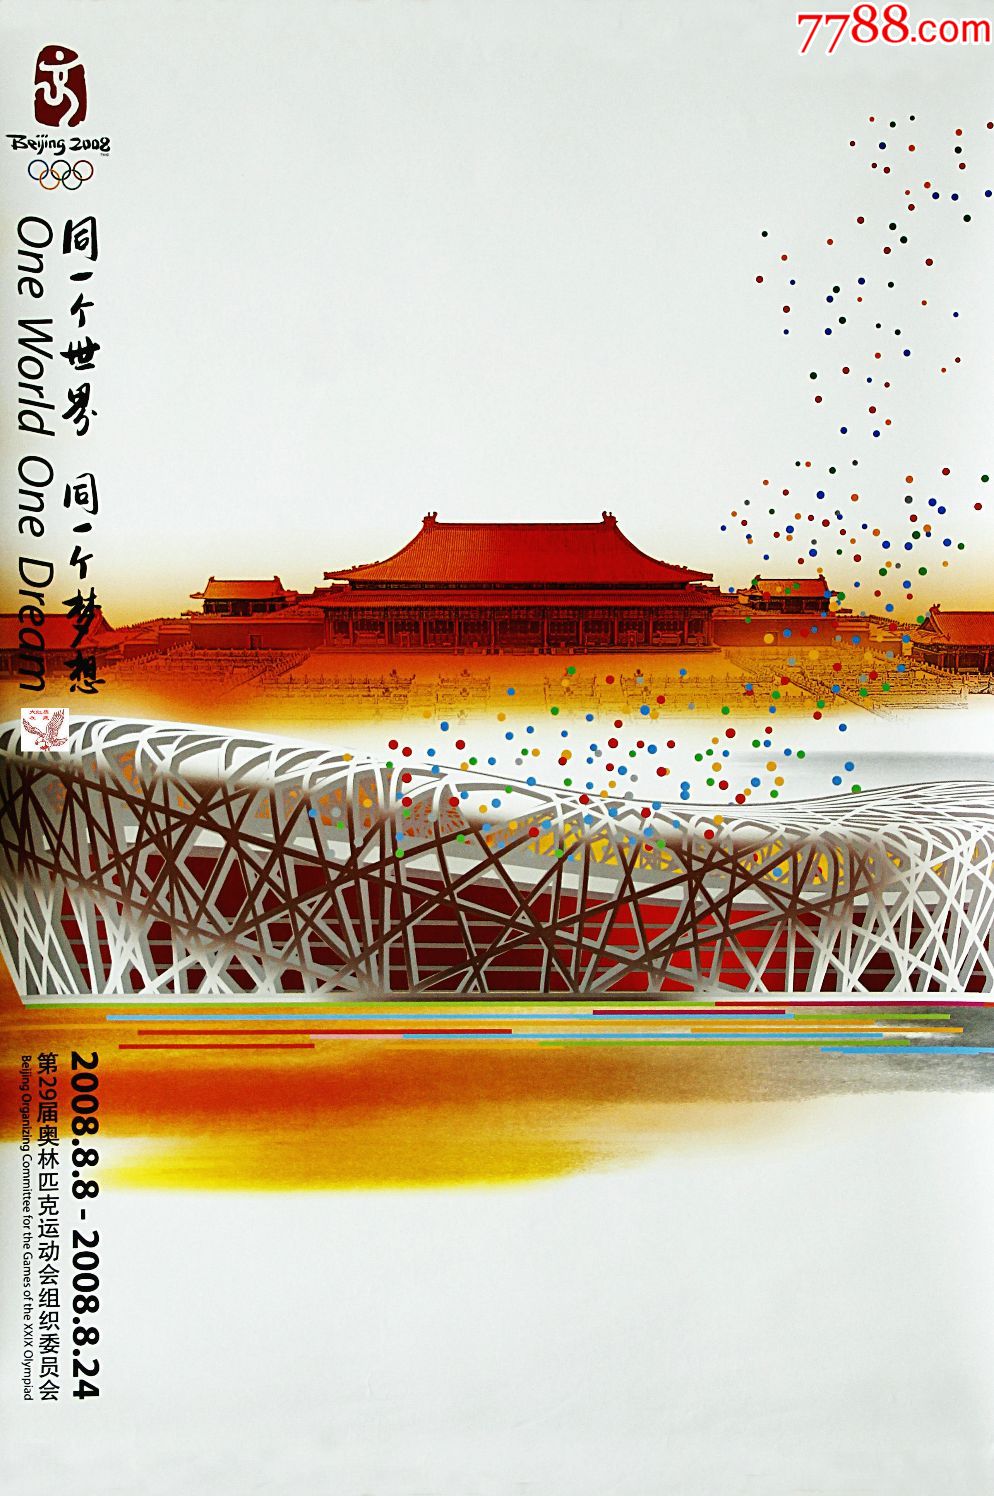 北京2008年奥运会主题海报_年画/宣传画_群鹰荟萃集藏